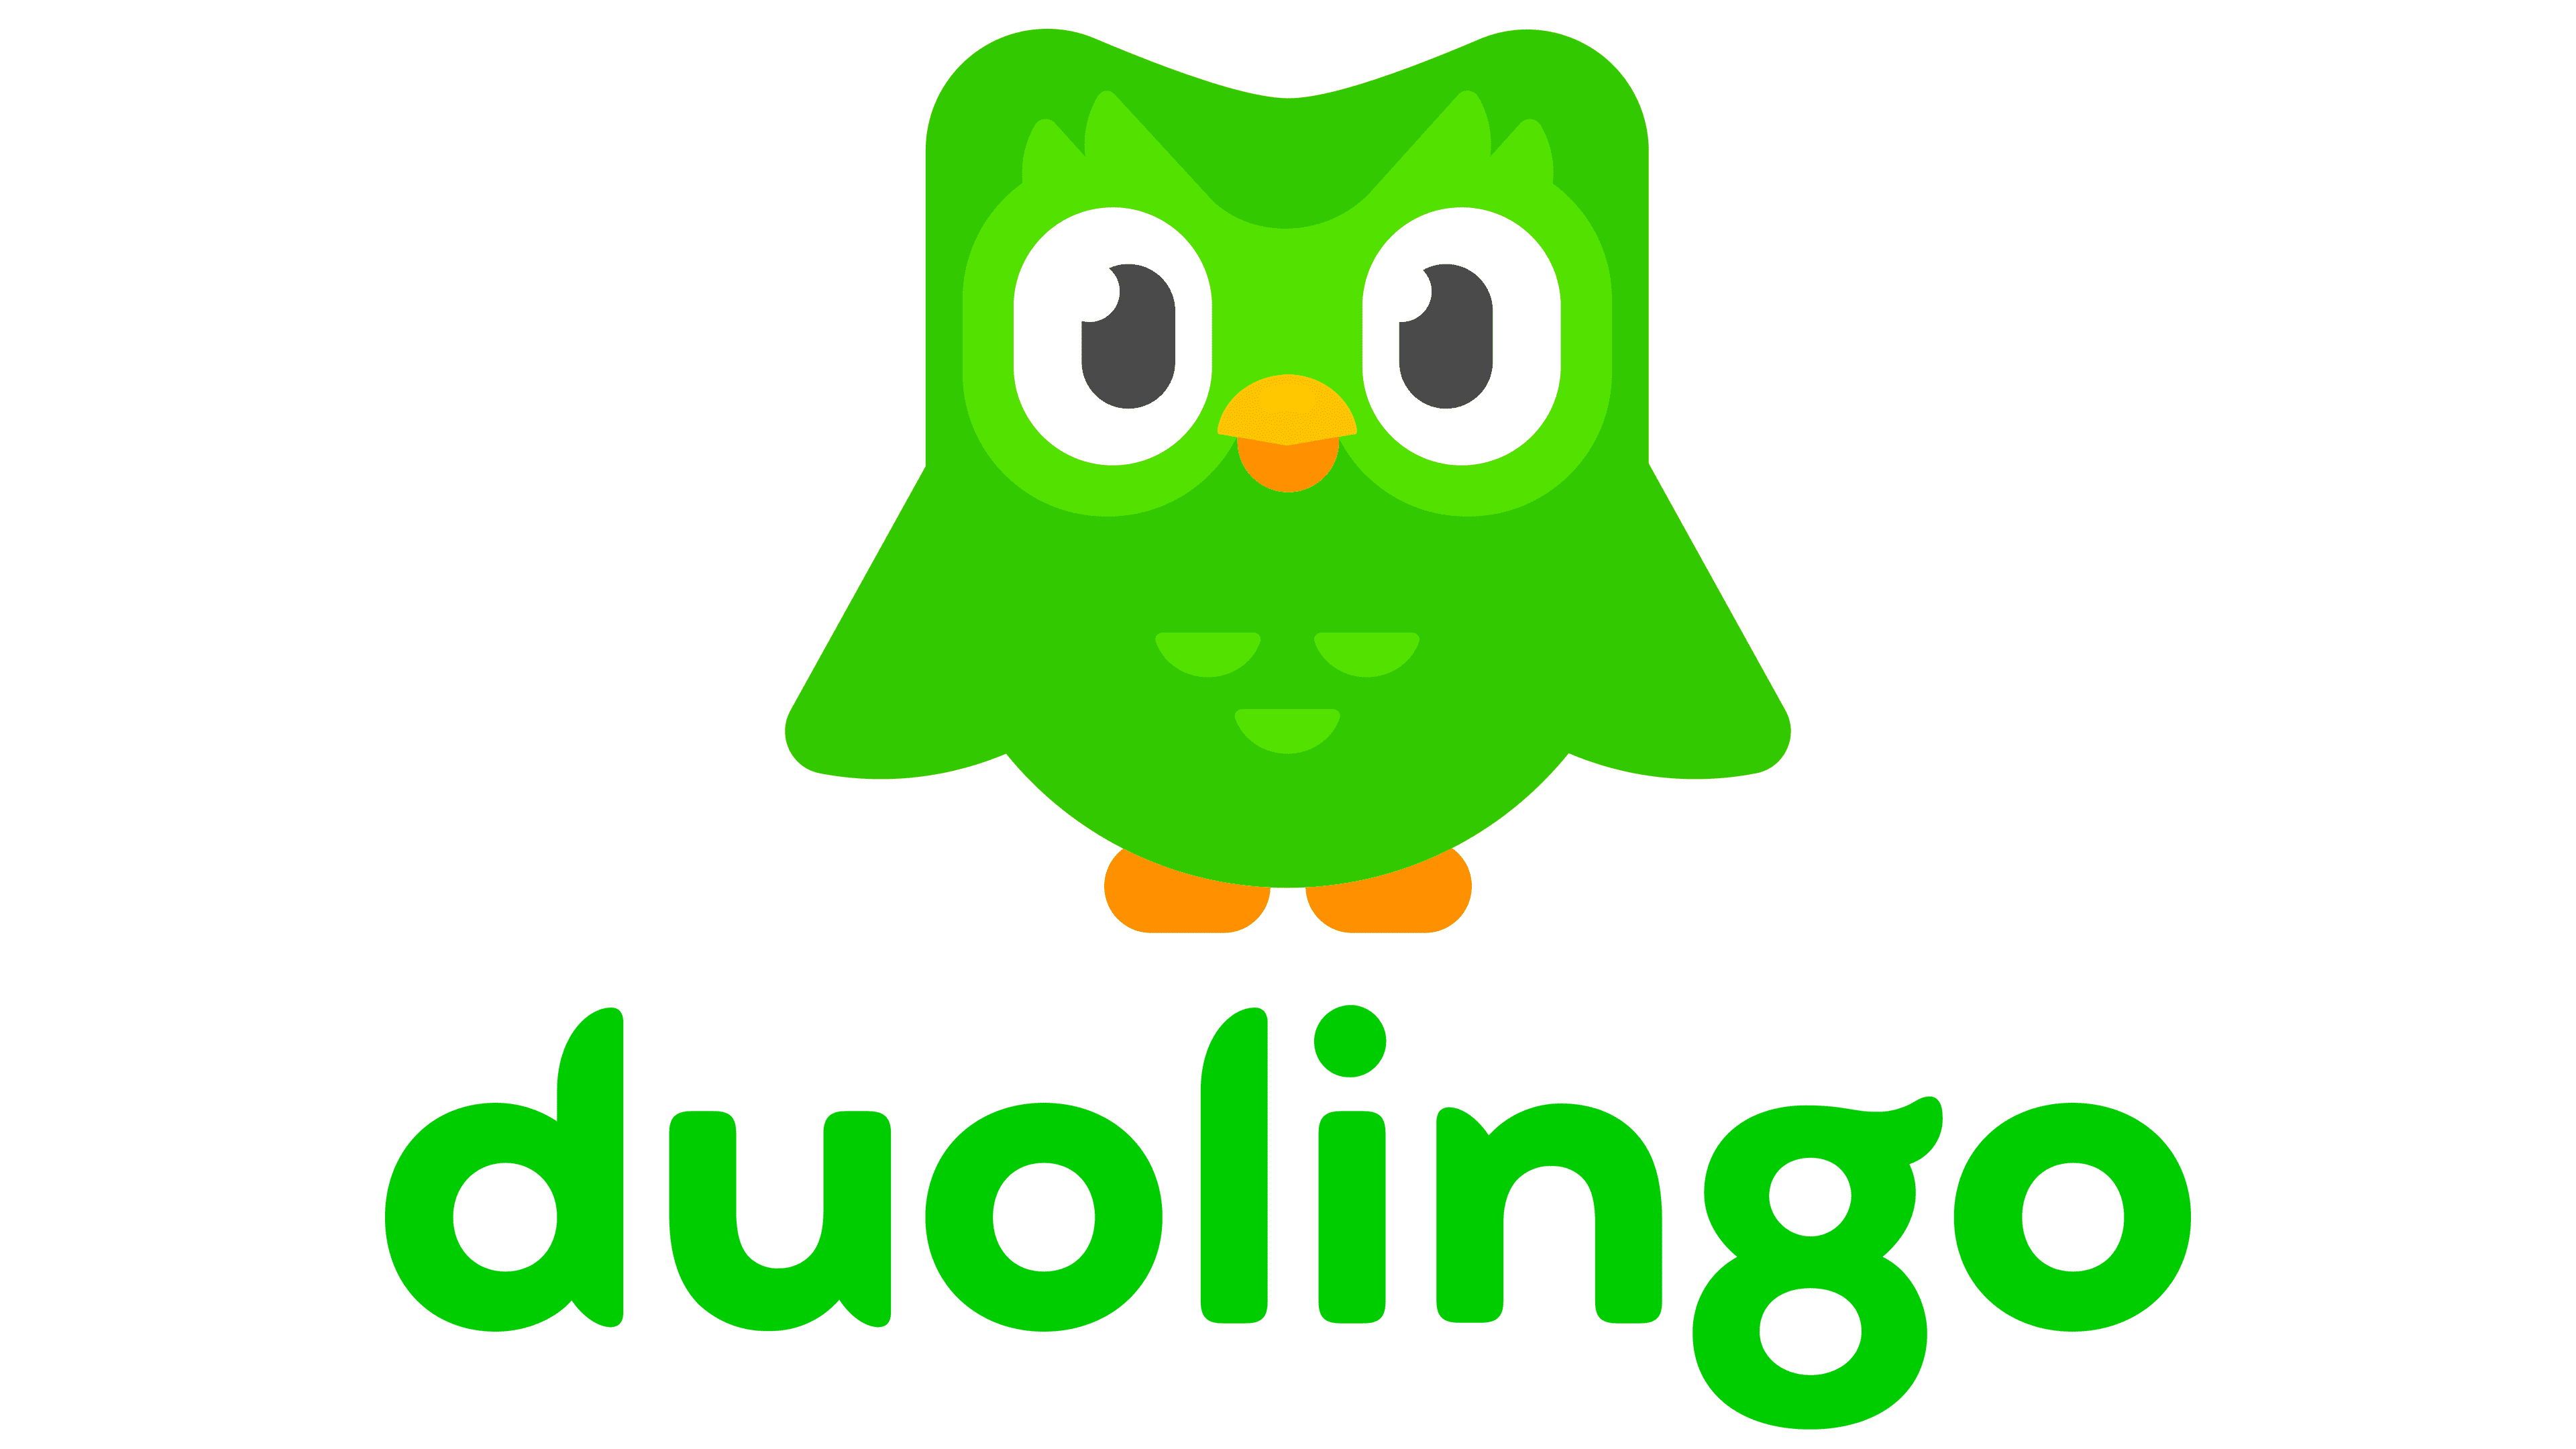 Duolingo Logo History